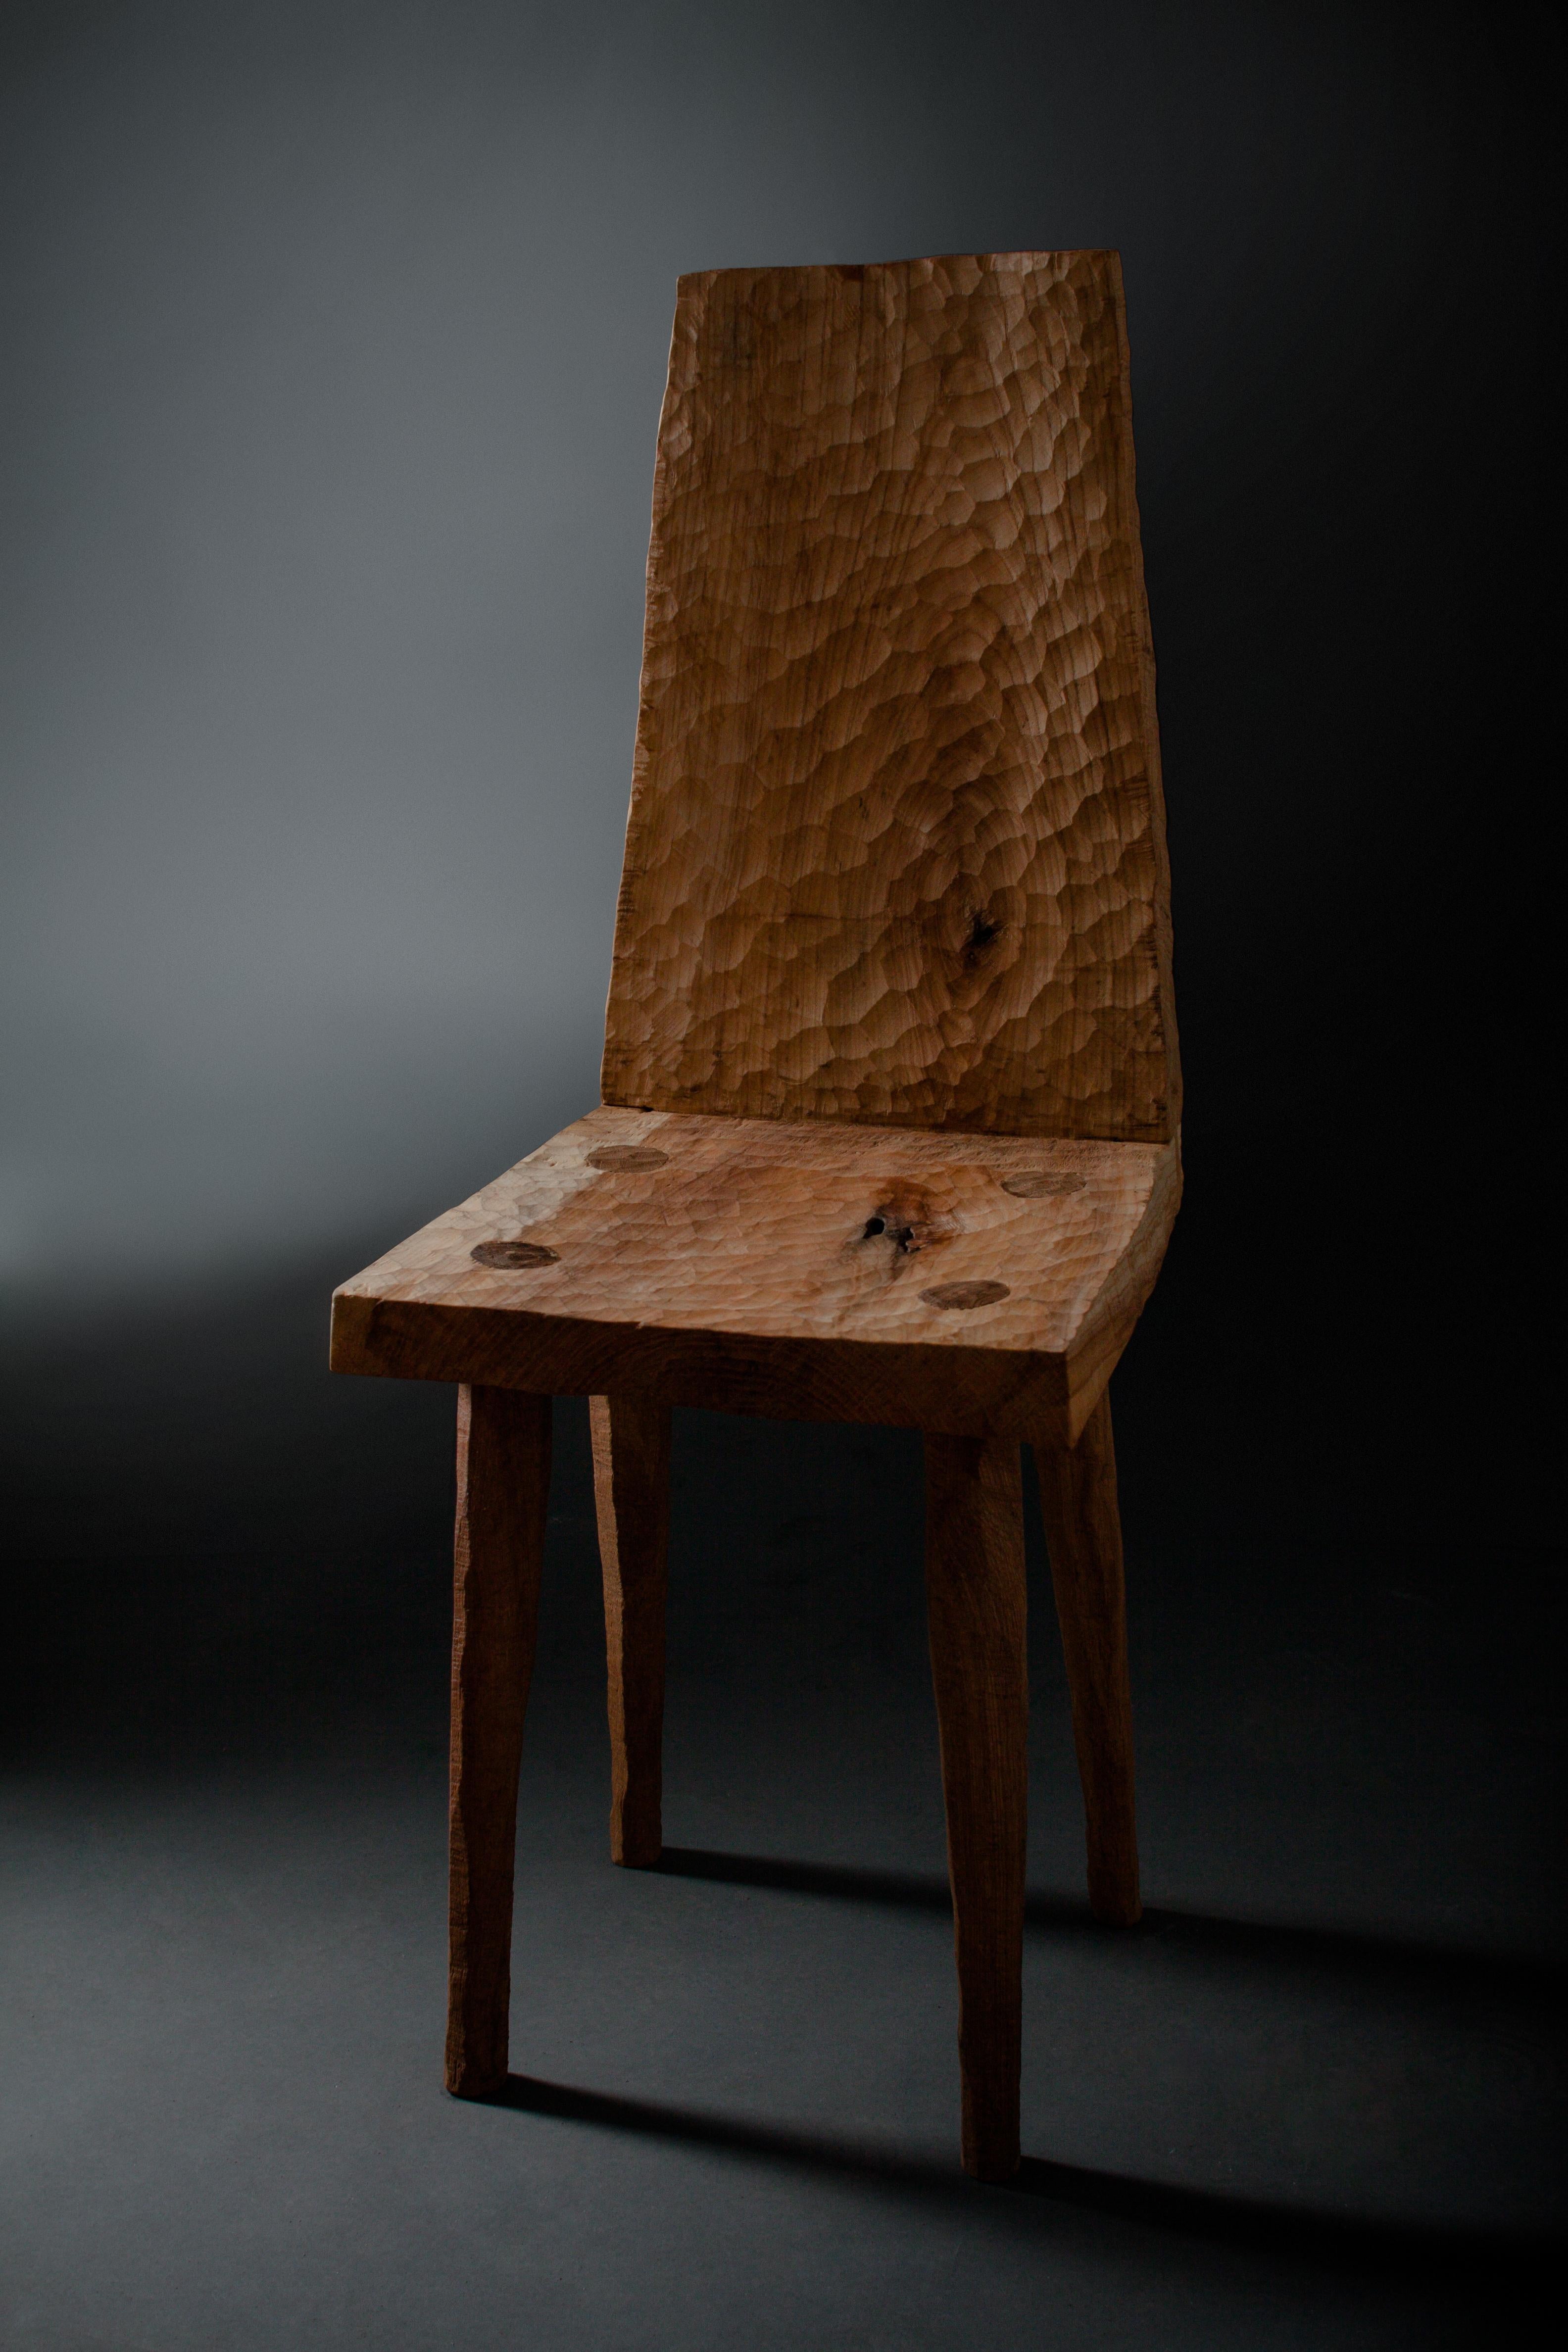 Chaise en chêne massif (+ huile de lin)
(Utilisation en extérieur possible)

Dimensions : H. 82 x 48 x 48 cm (SH 45 cm)

Des meubles chaleureux ont été créés par le designer russe Denis Milovanov du studio 